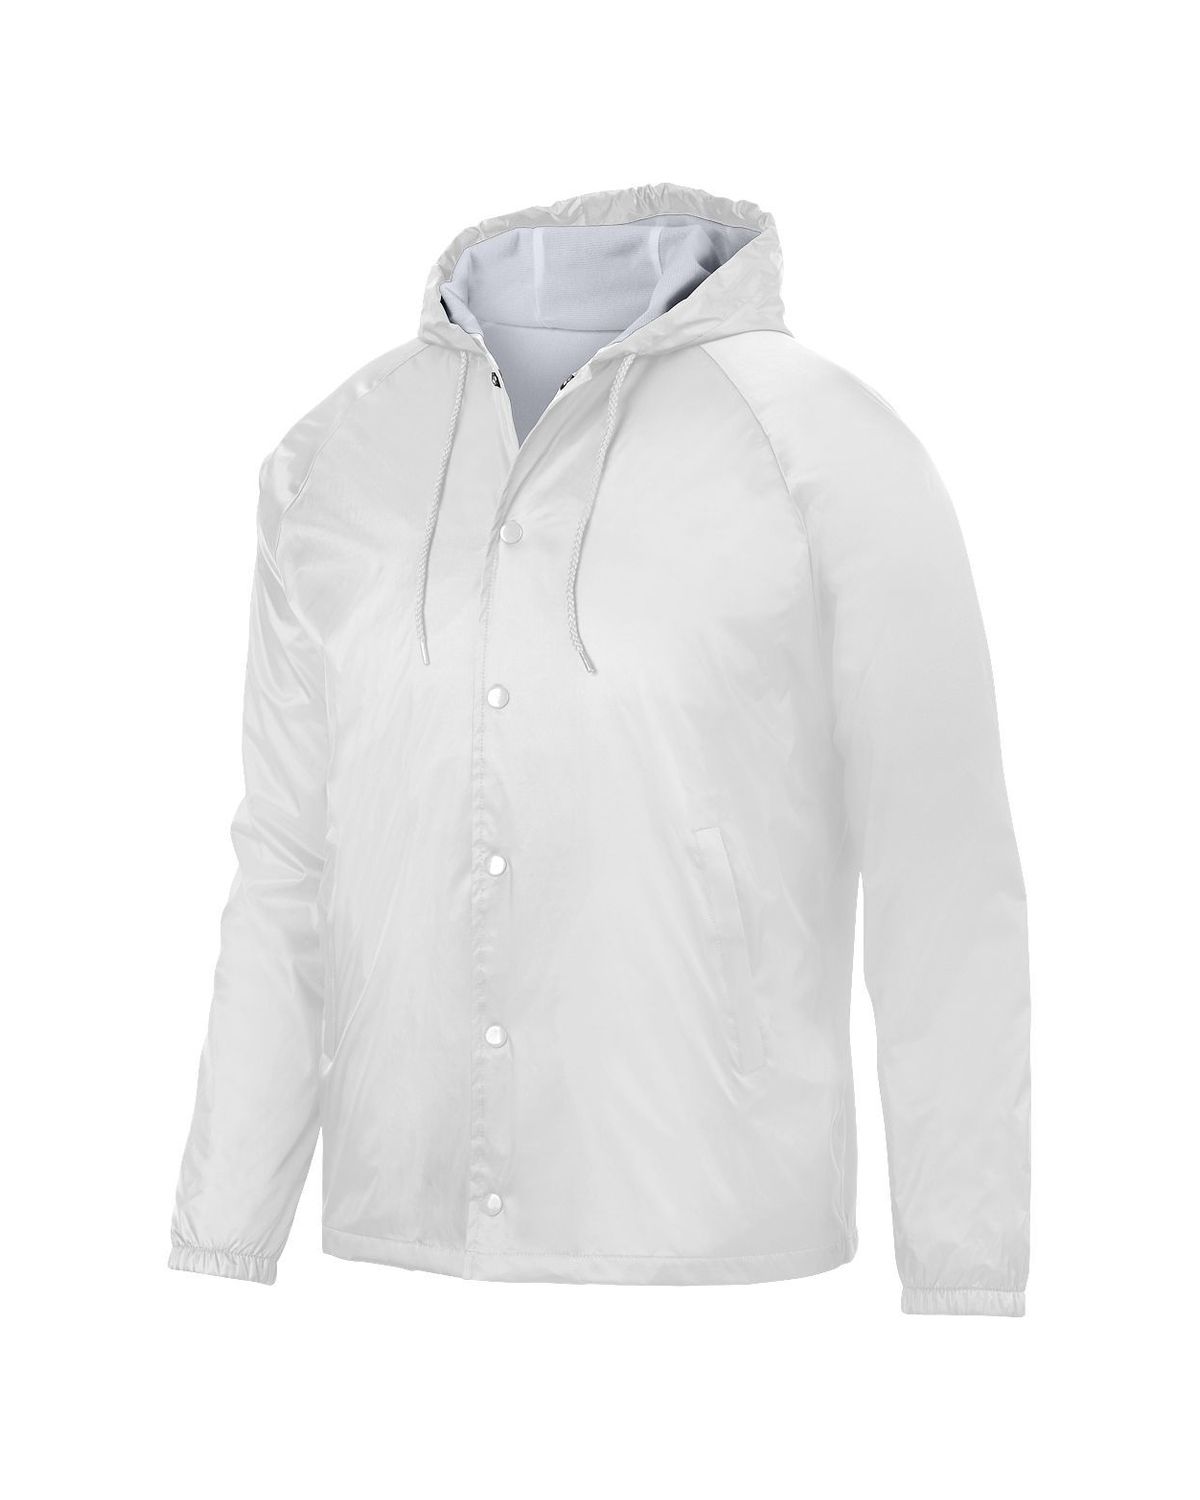 'Augusta Sportswear 3102 Hooded Coach'S Jacket'